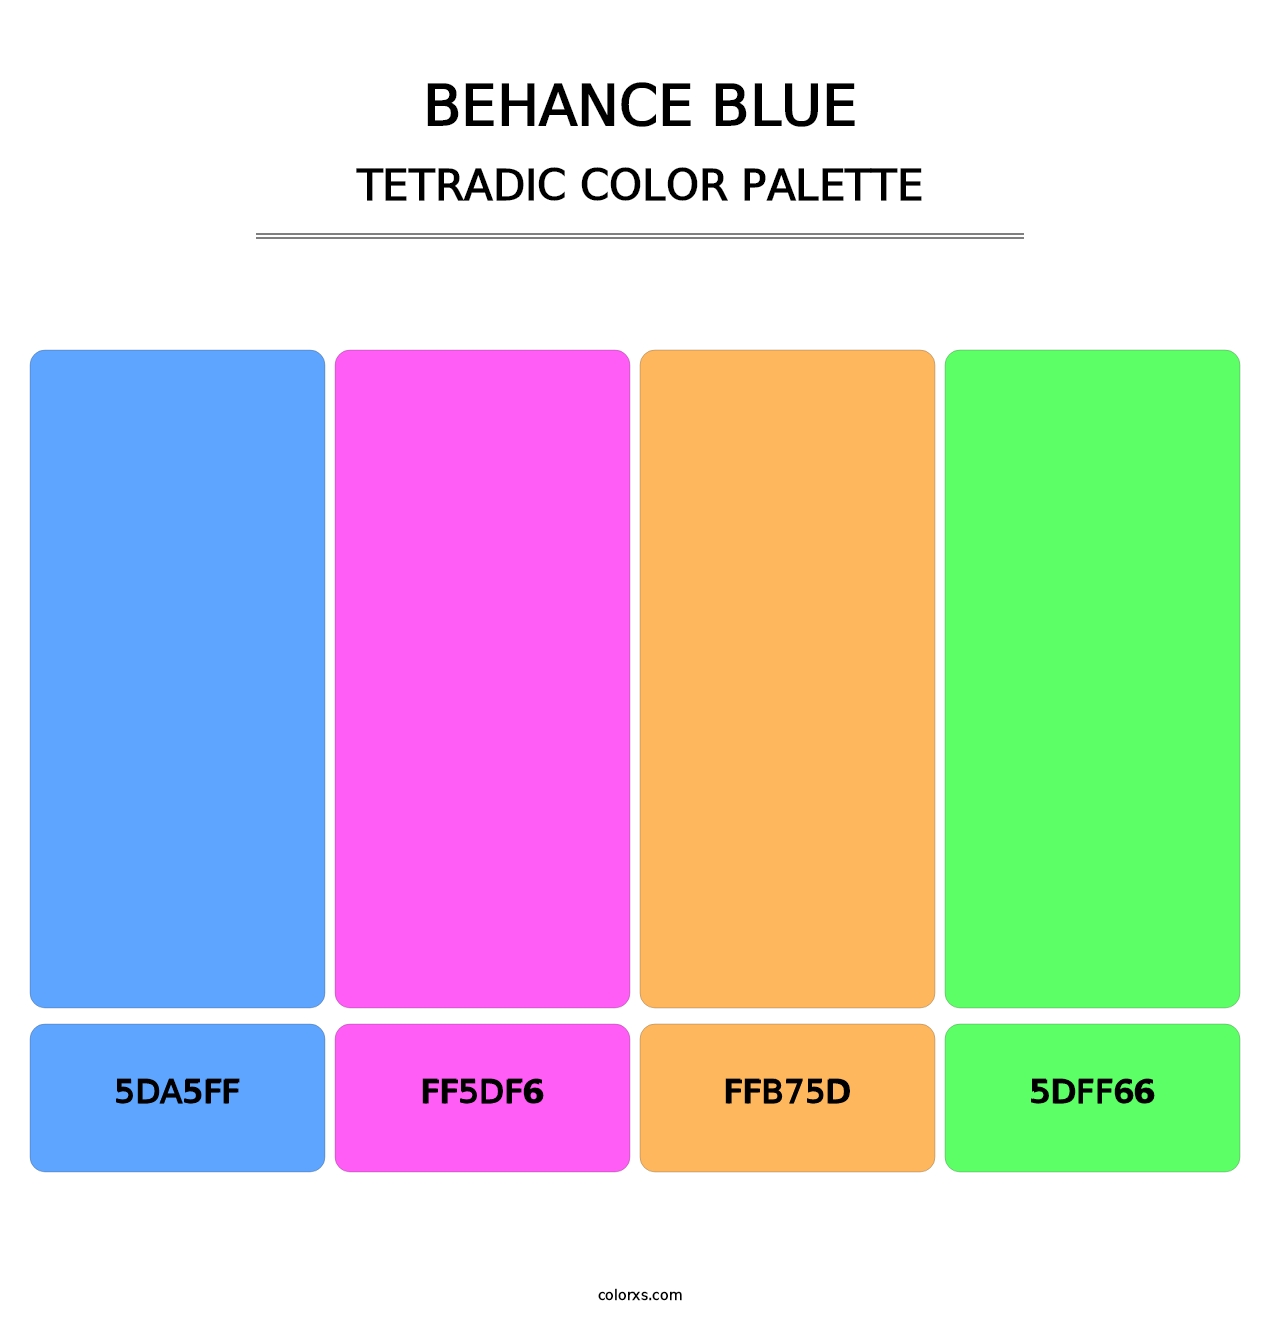 Behance Blue - Tetradic Color Palette